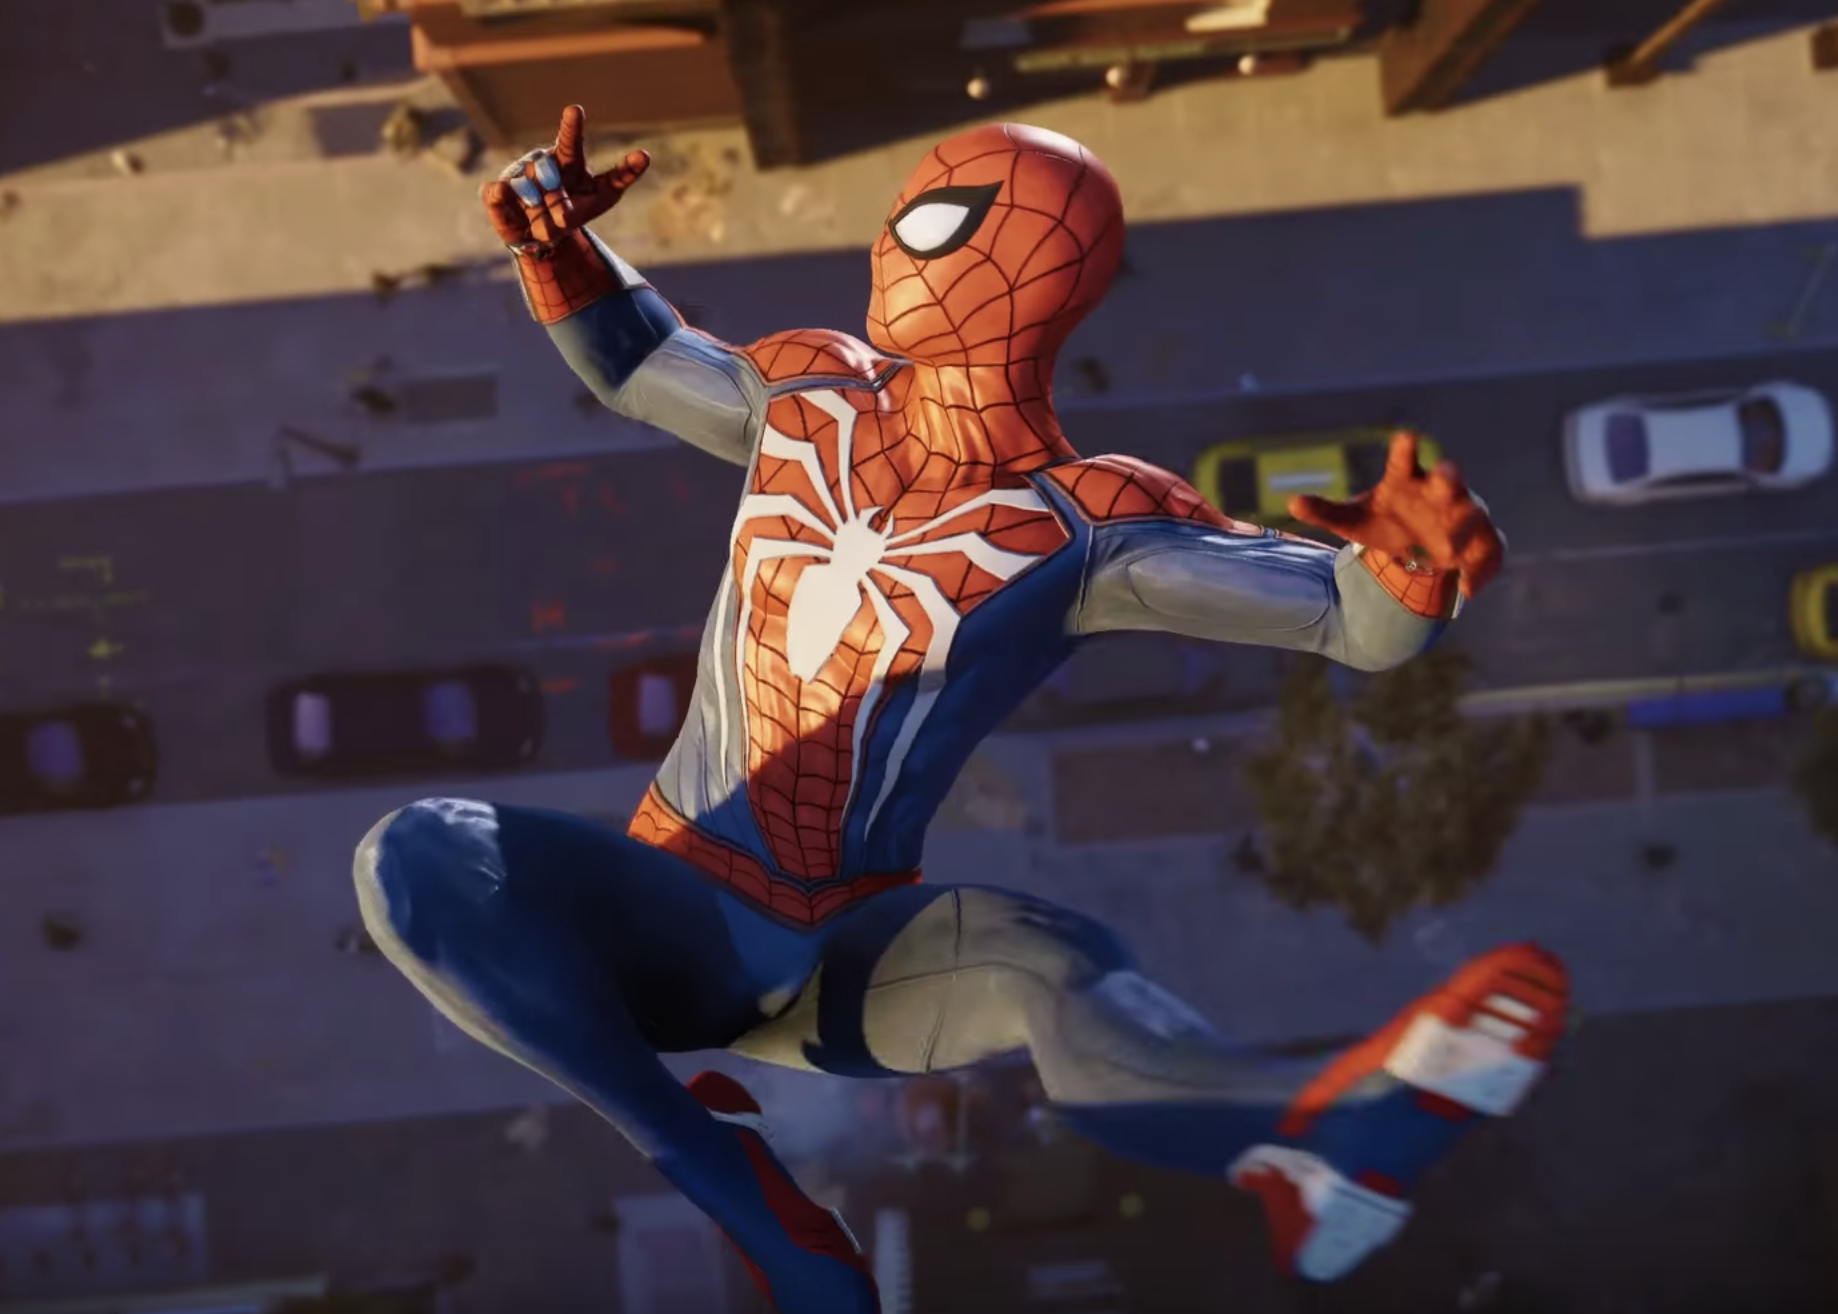 Spider man ps4. Человек паук игра на пс4. Marvel человек-паук (ps4). Spider man 2018 ps4. Игры на 1 2018 года